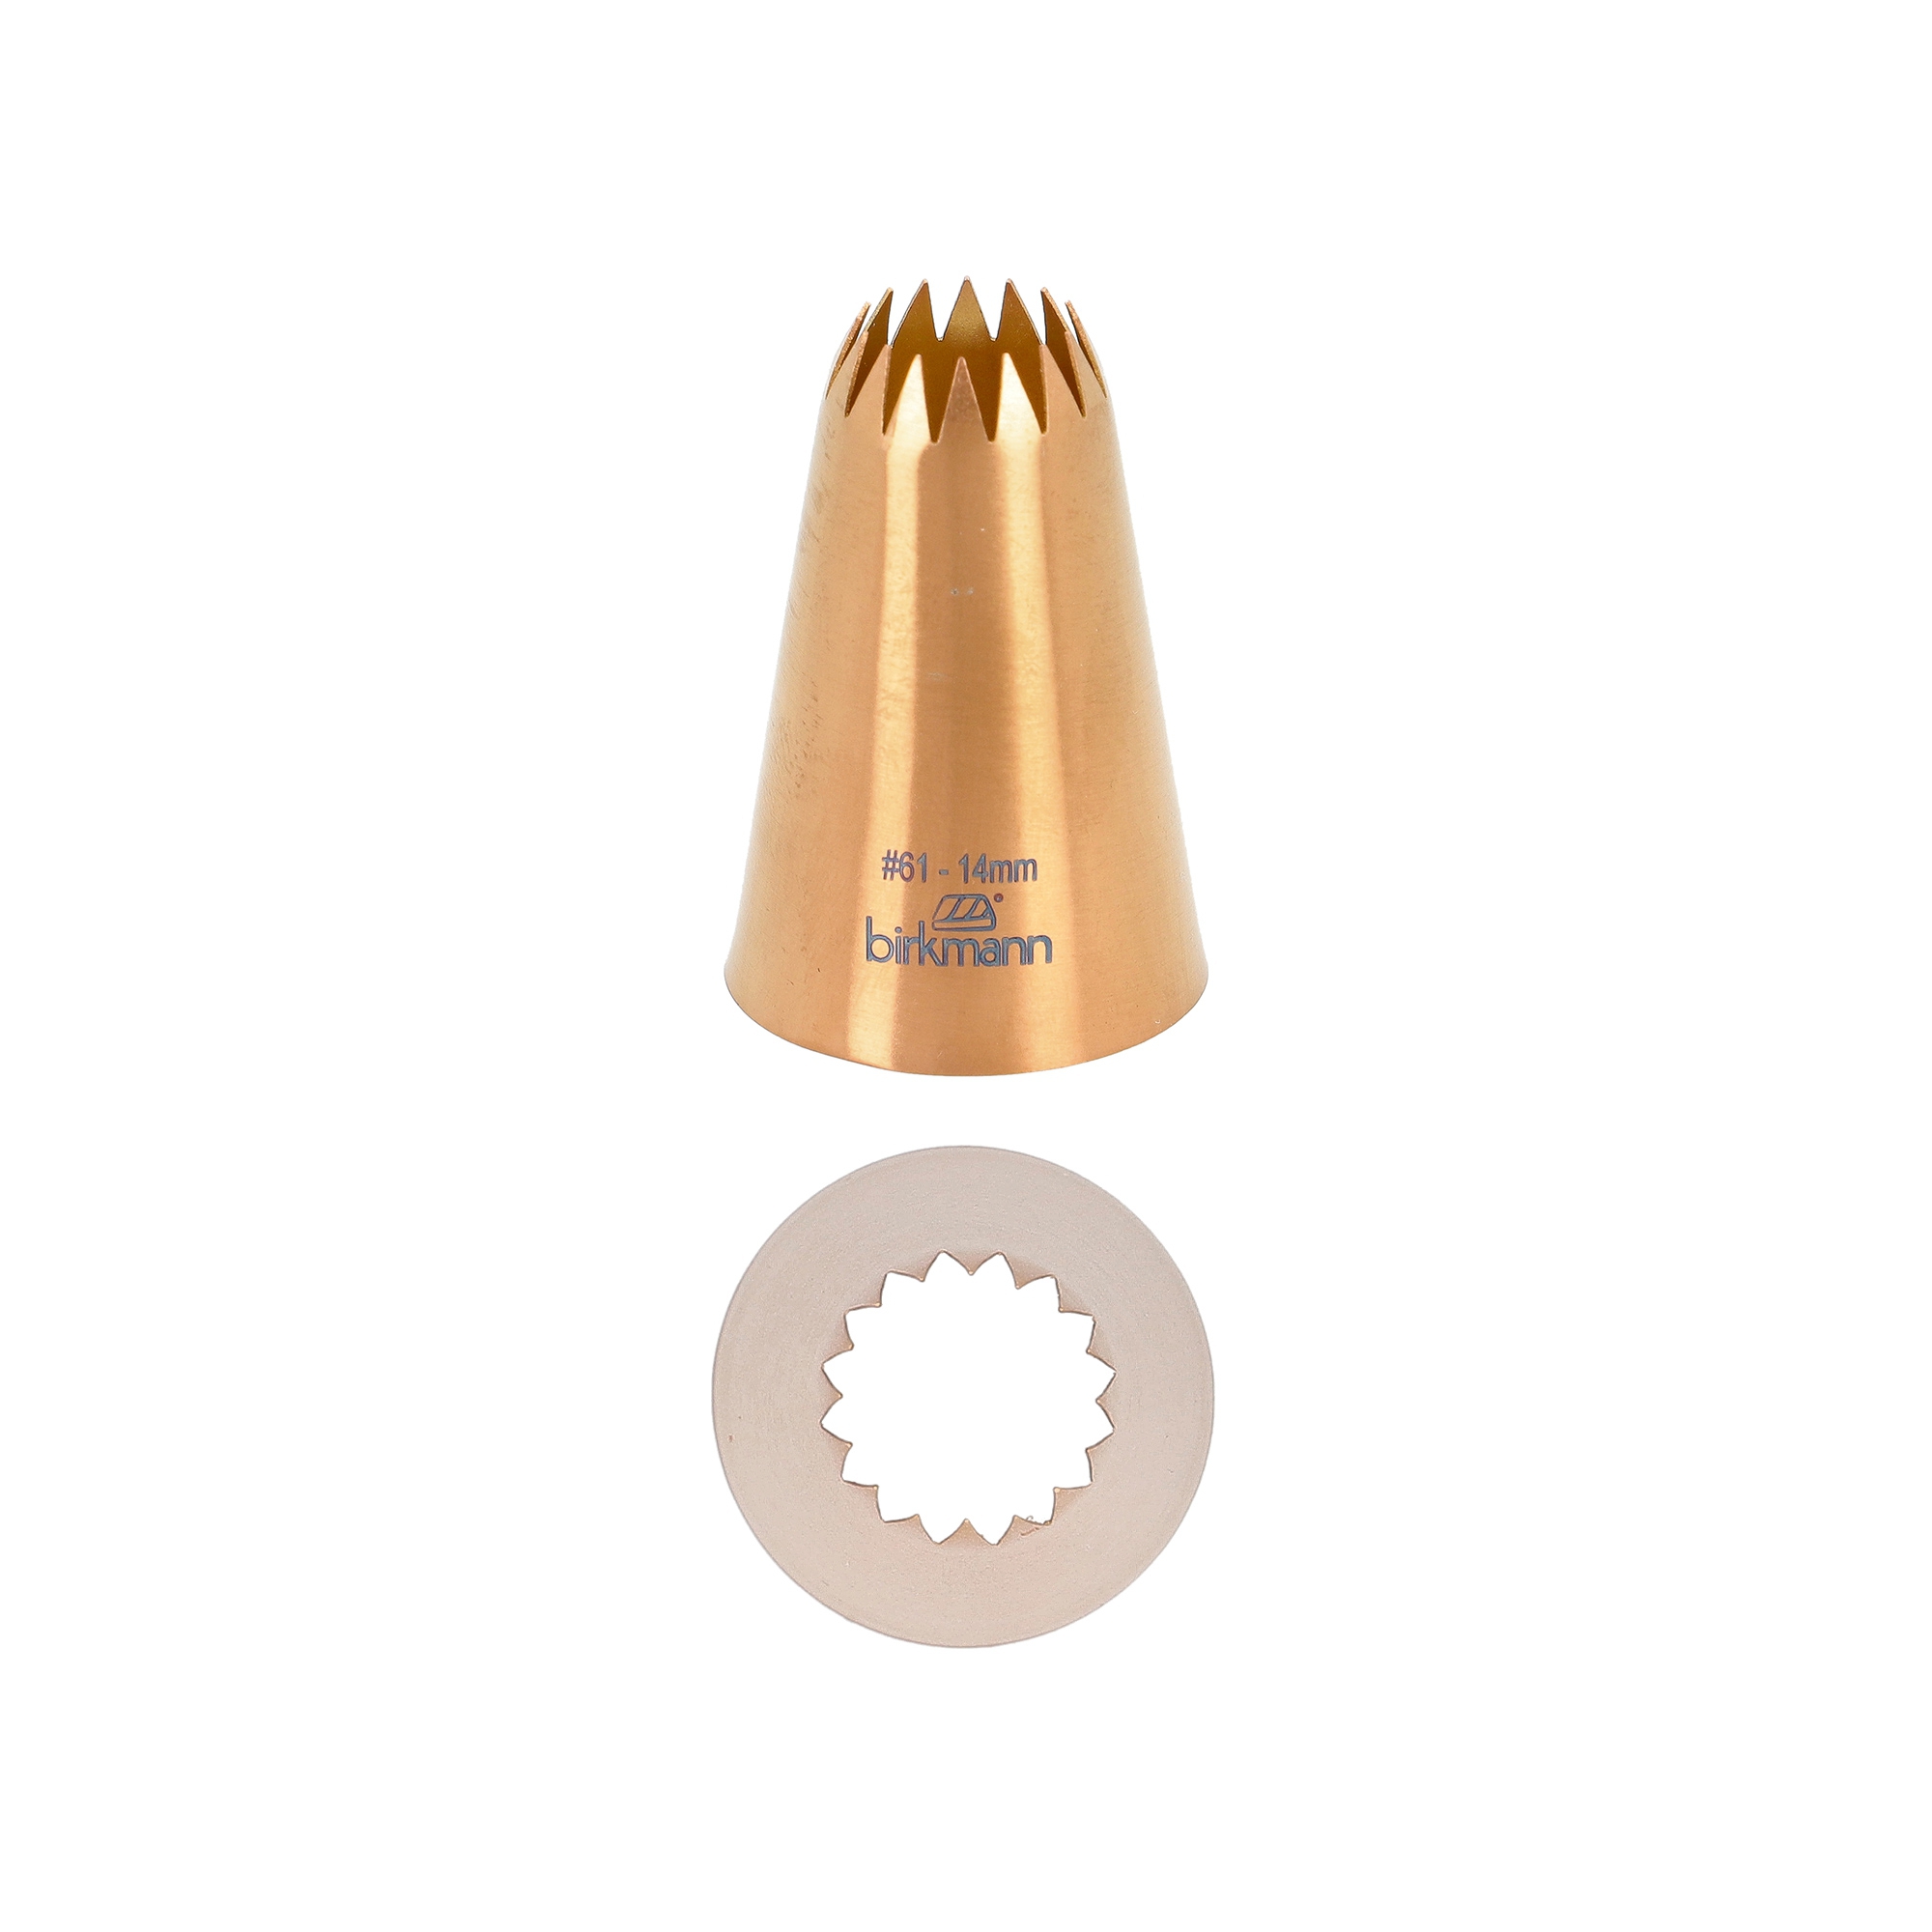 Birkmann - French star nozzle copper colored #61 - 14mm